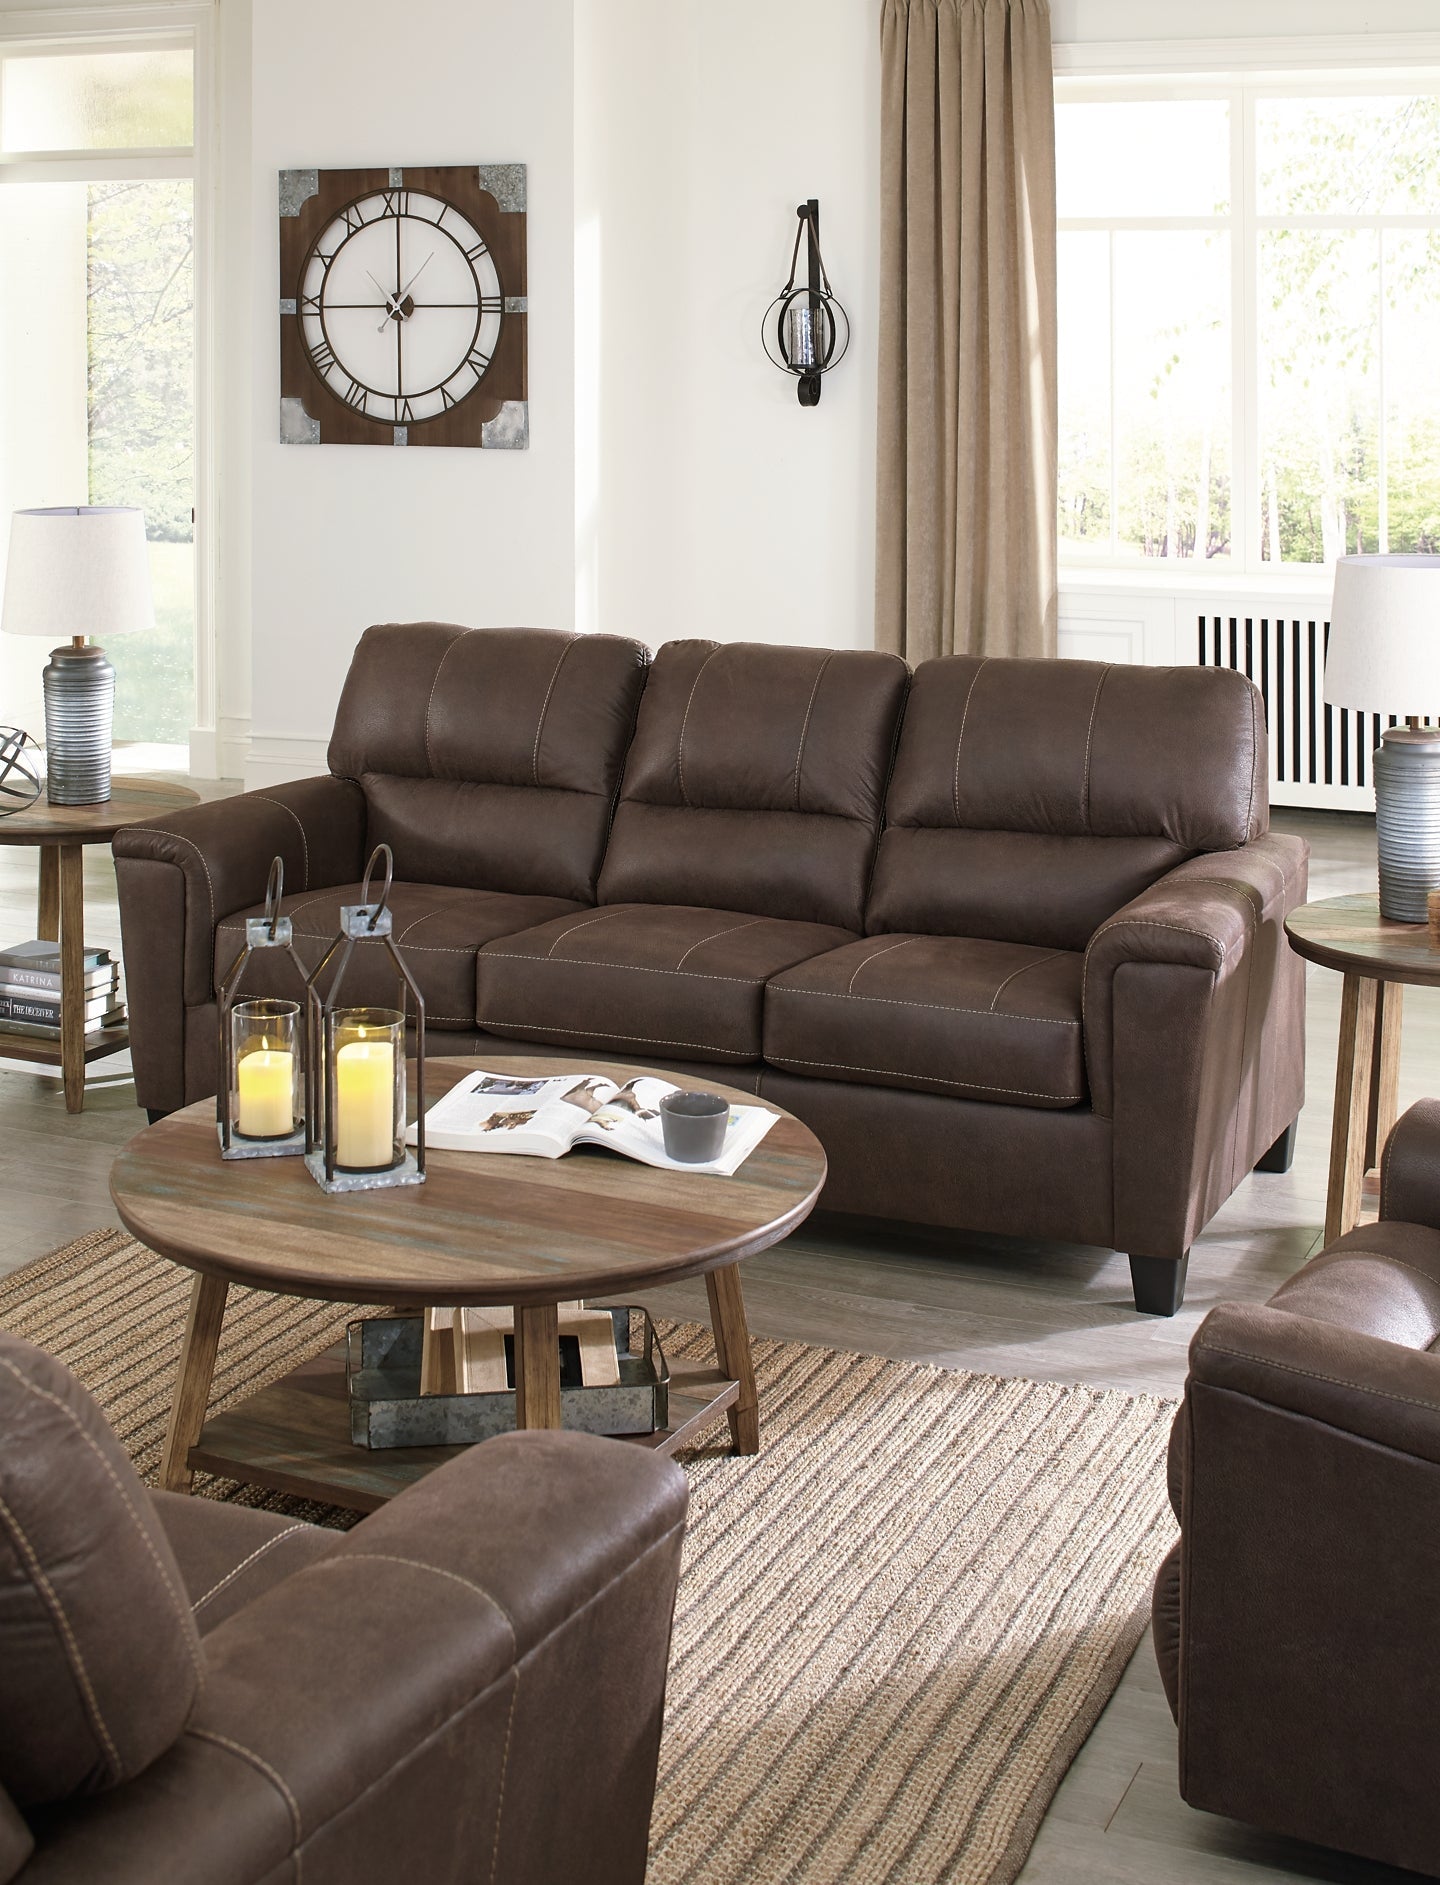 Navi Sofa at Towne & Country Furniture (AL) furniture, home furniture, home decor, sofa, bedding